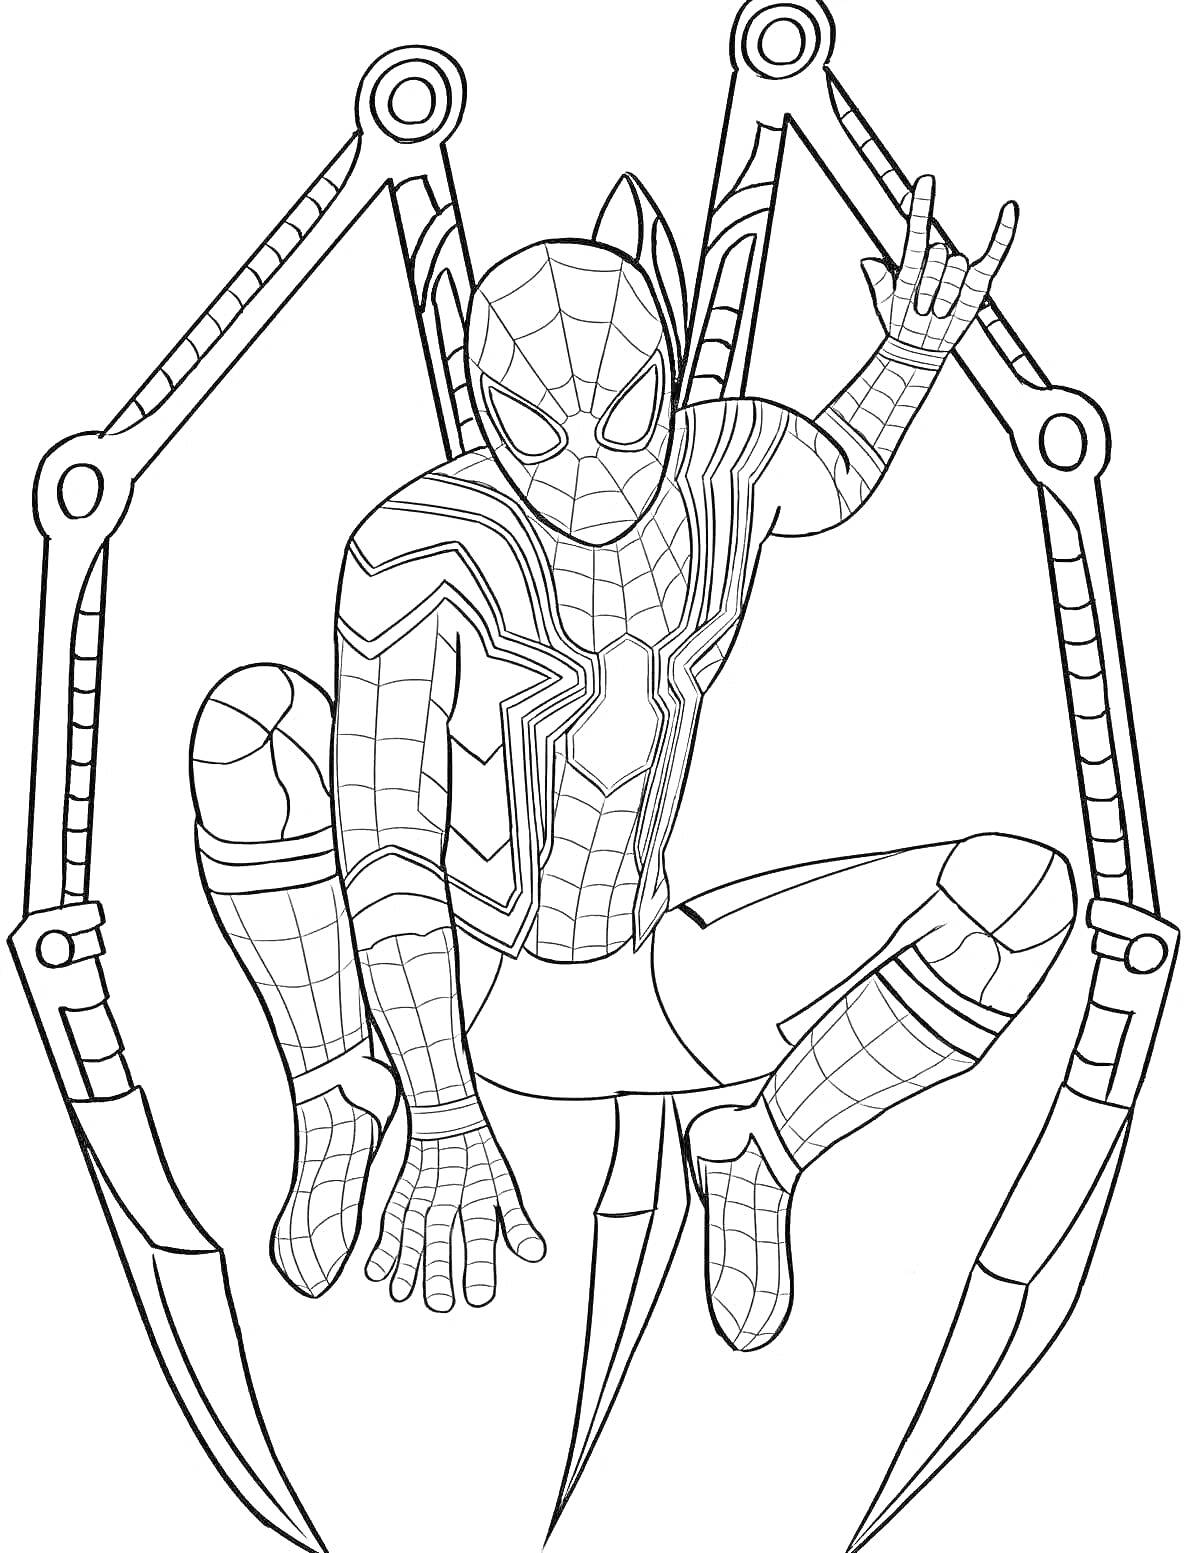 РаскраскаЧеловек-паук с механическими паучьими ногами в паучьей позе